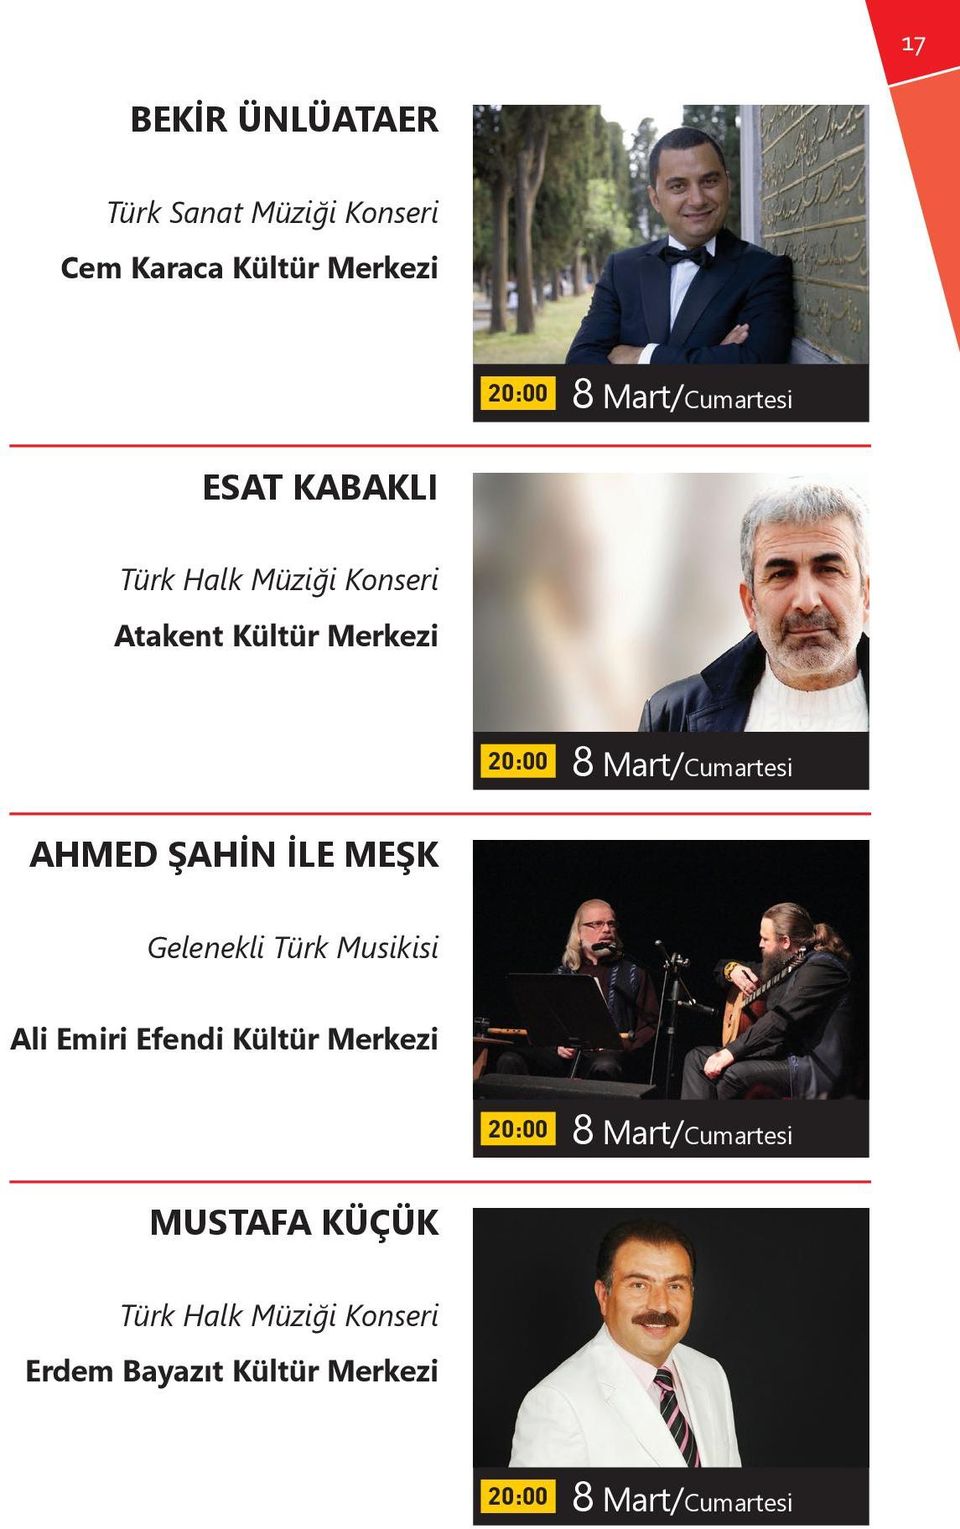 MEŞK Gelenekli Türk Musikisi Ali Emiri Efendi Kültür 8